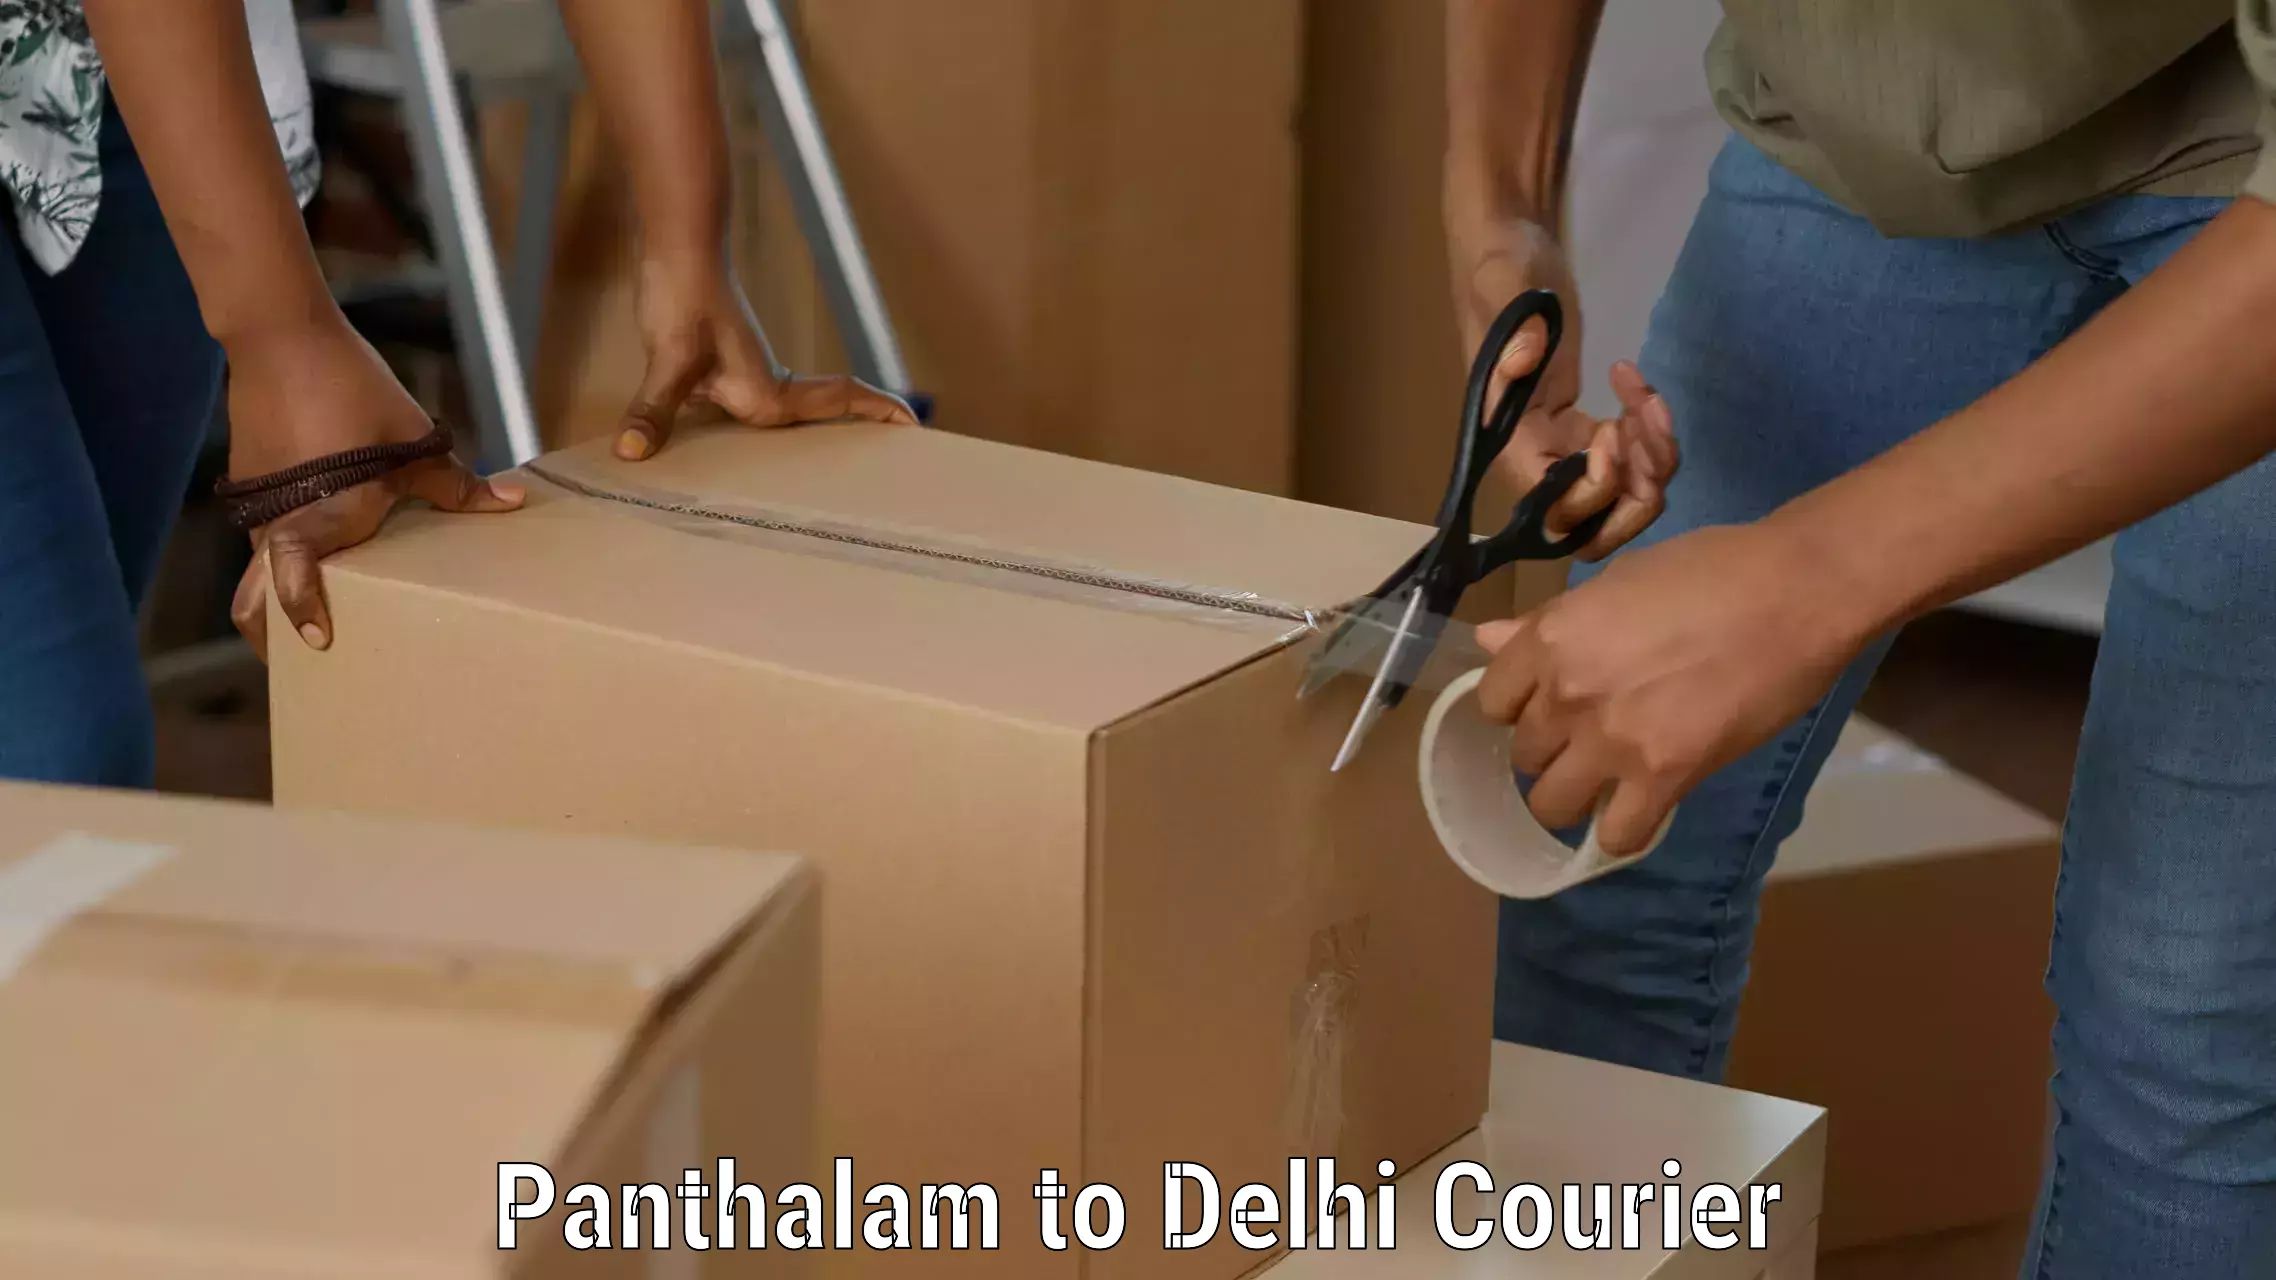 Affordable parcel service Panthalam to Ramesh Nagar